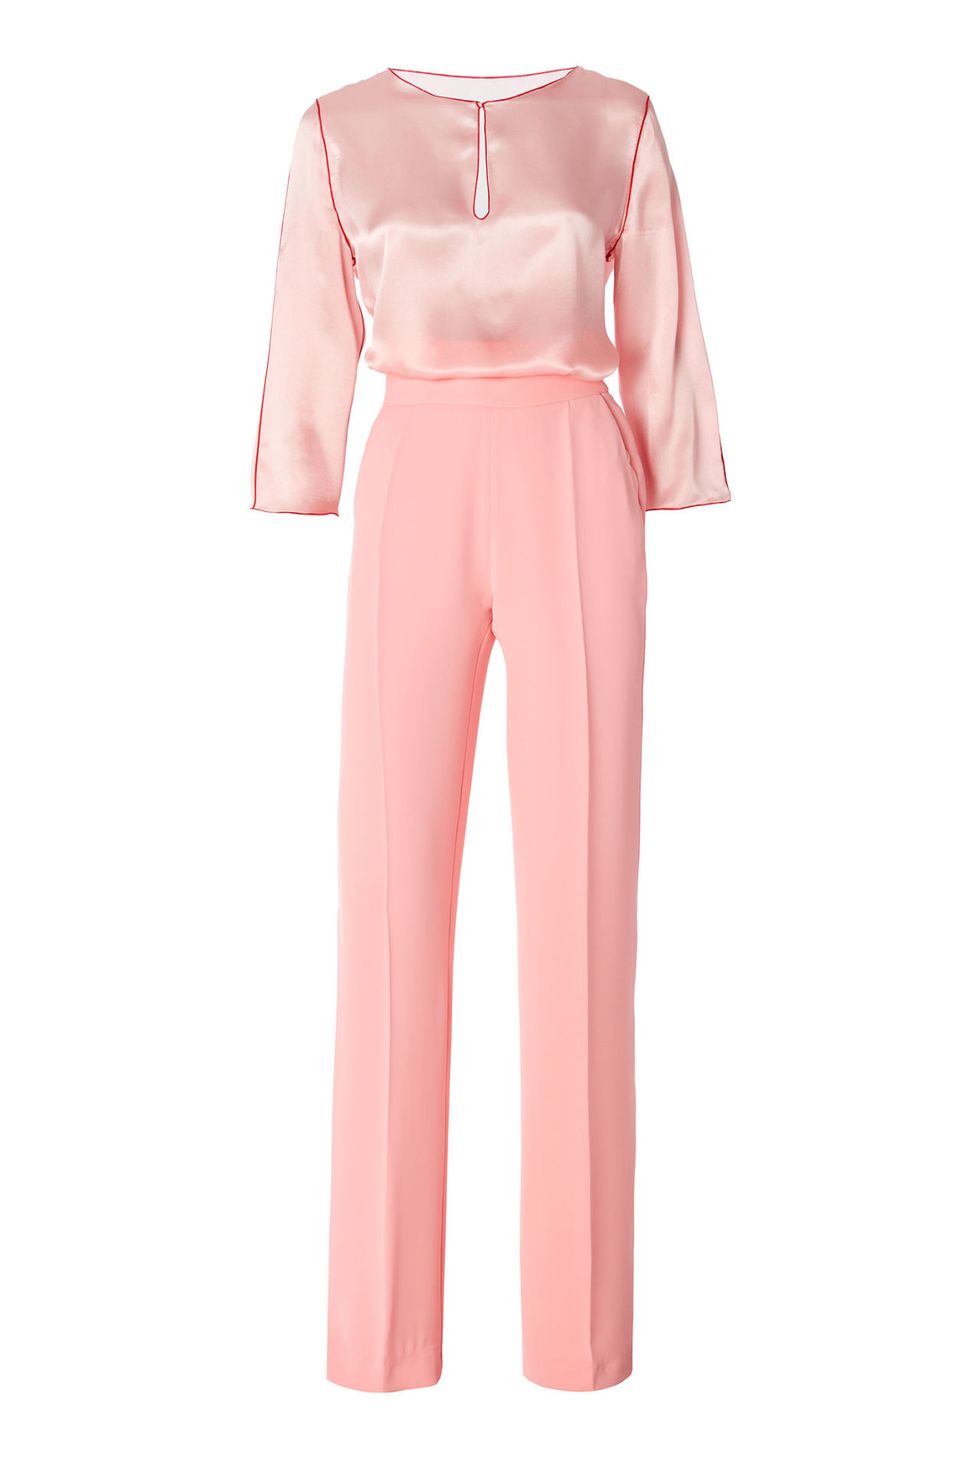 Ecco un outfit per invitate a un matrimonio, abito da cerimonia completo pantalone rosa di Atelier Emé